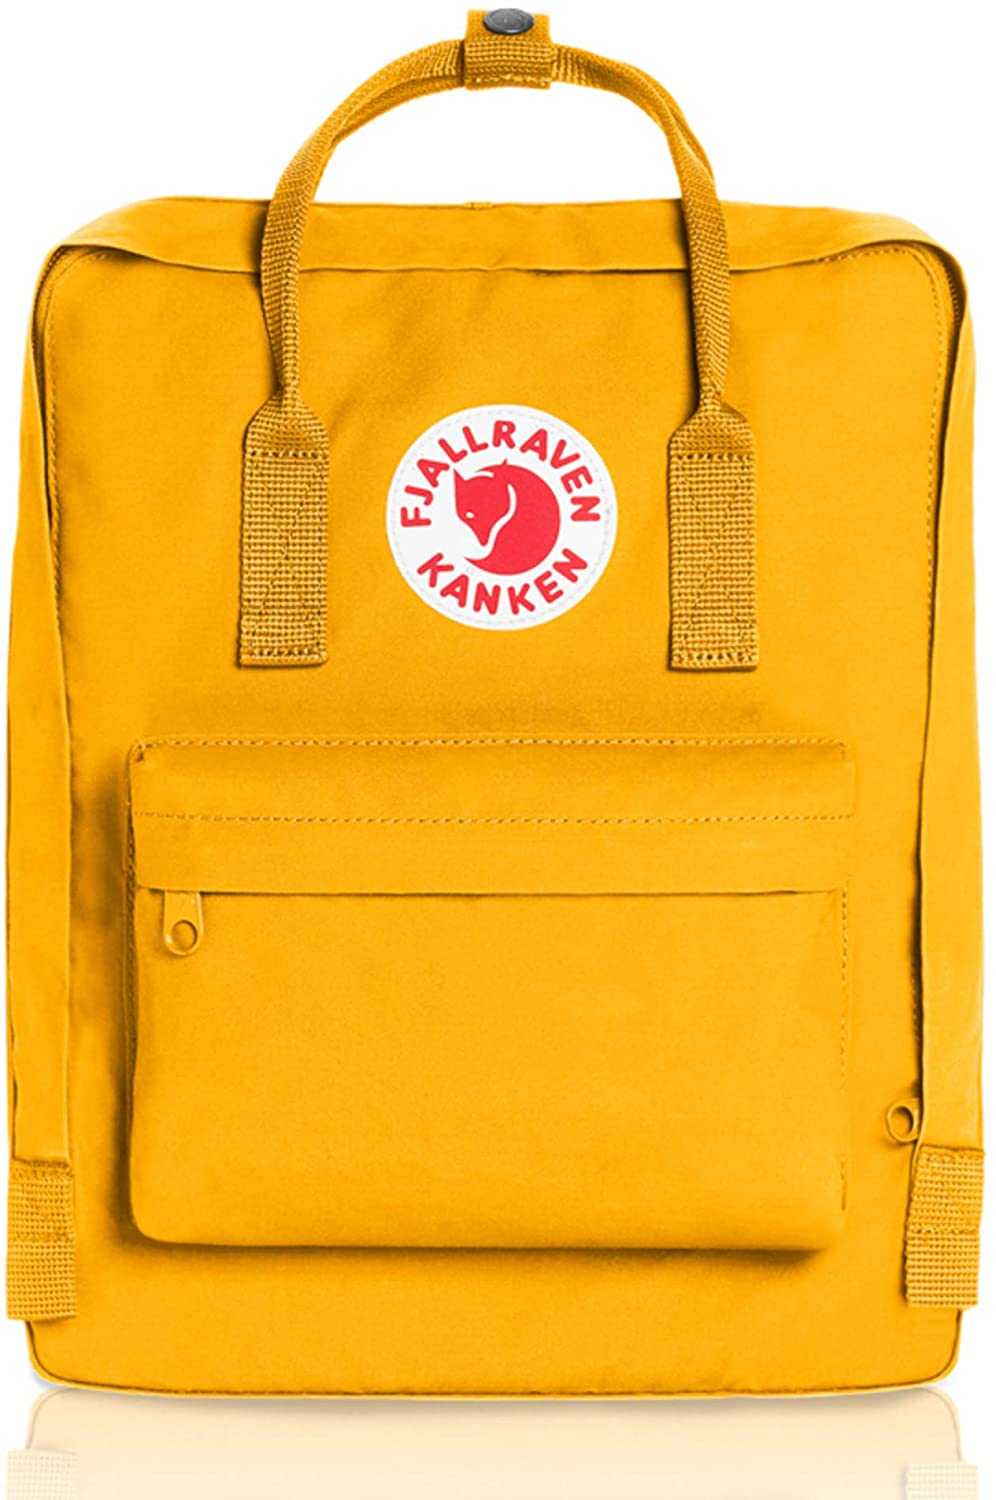 FJallraven Kranken Backpack in Warm Yellow